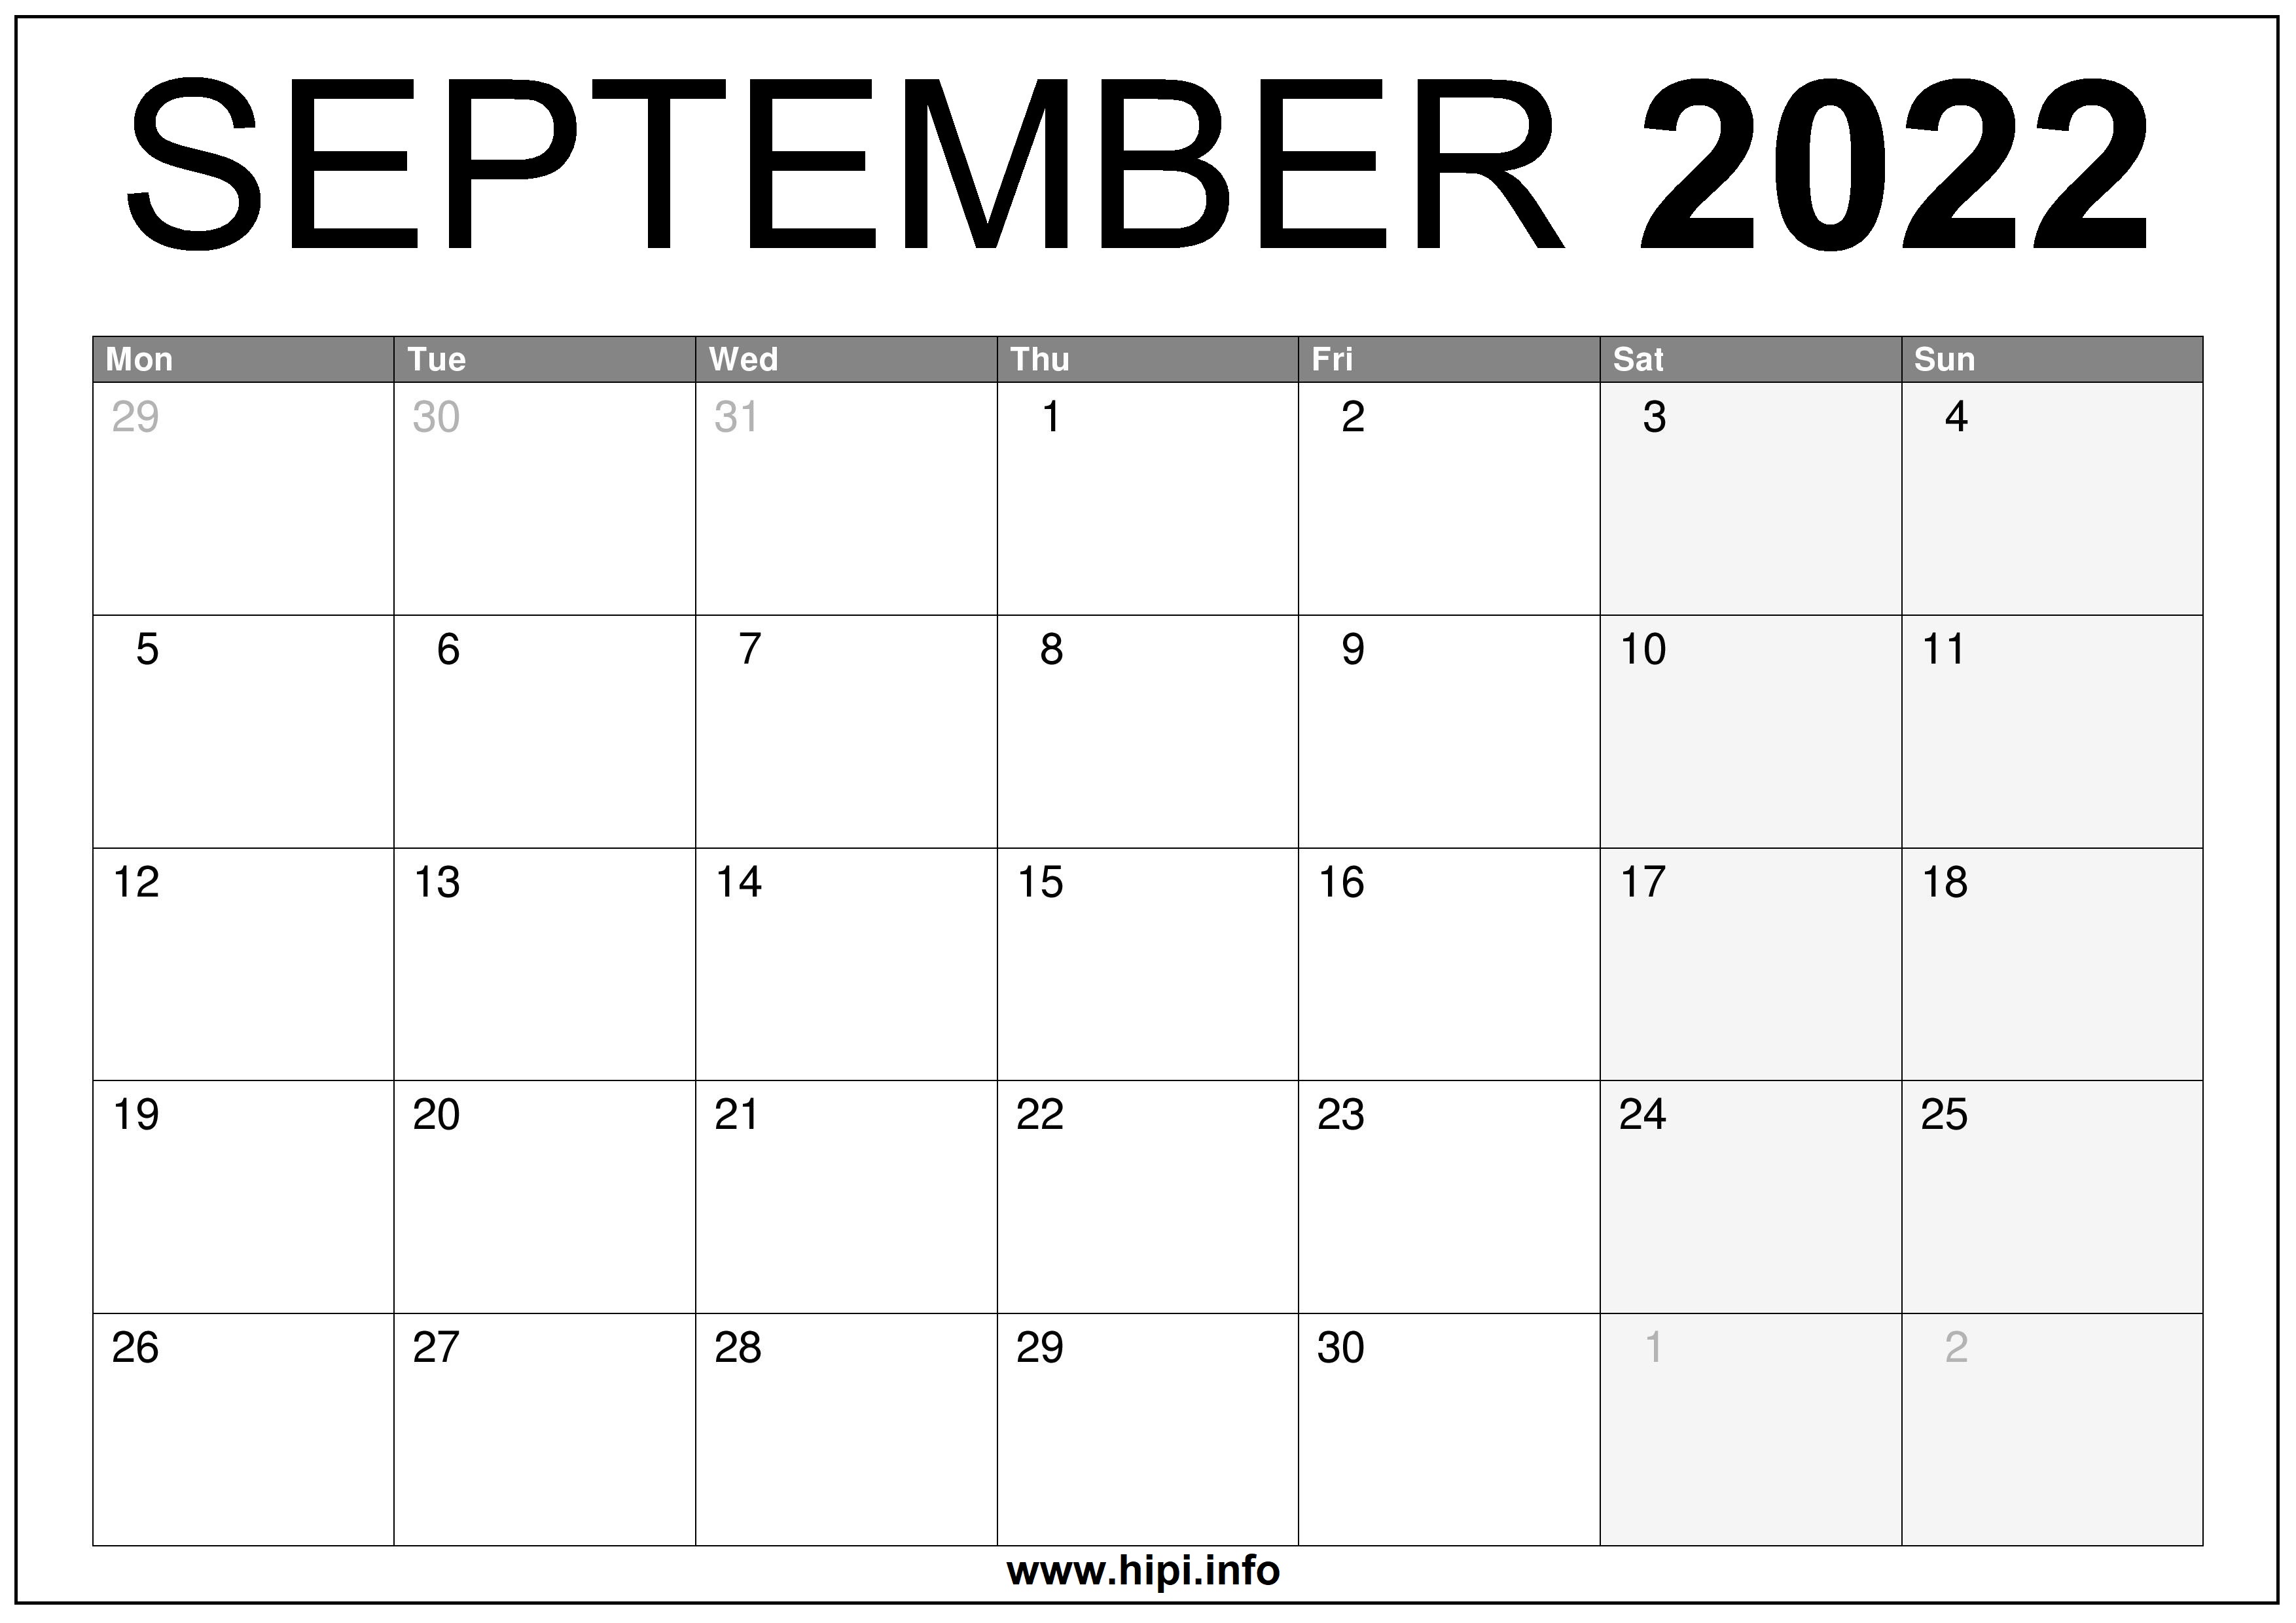 Free Printable Calendar Sept 2022 September 2022 Uk Calendar Printable Free - Hipi.info | Calendars Printable  Free